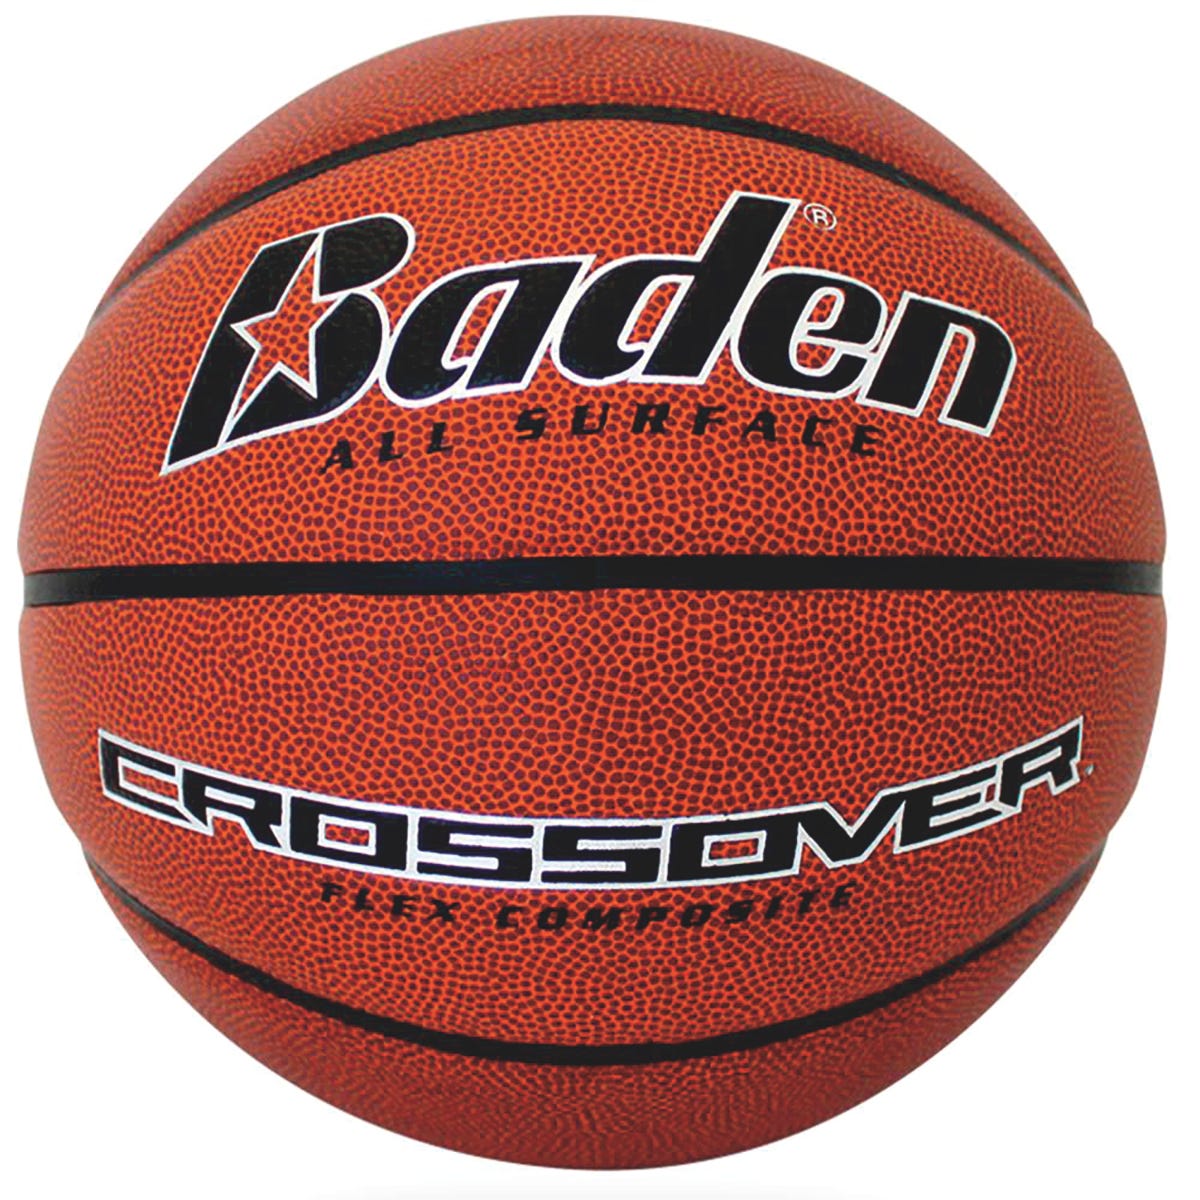 Baden® Crossover Basketballs